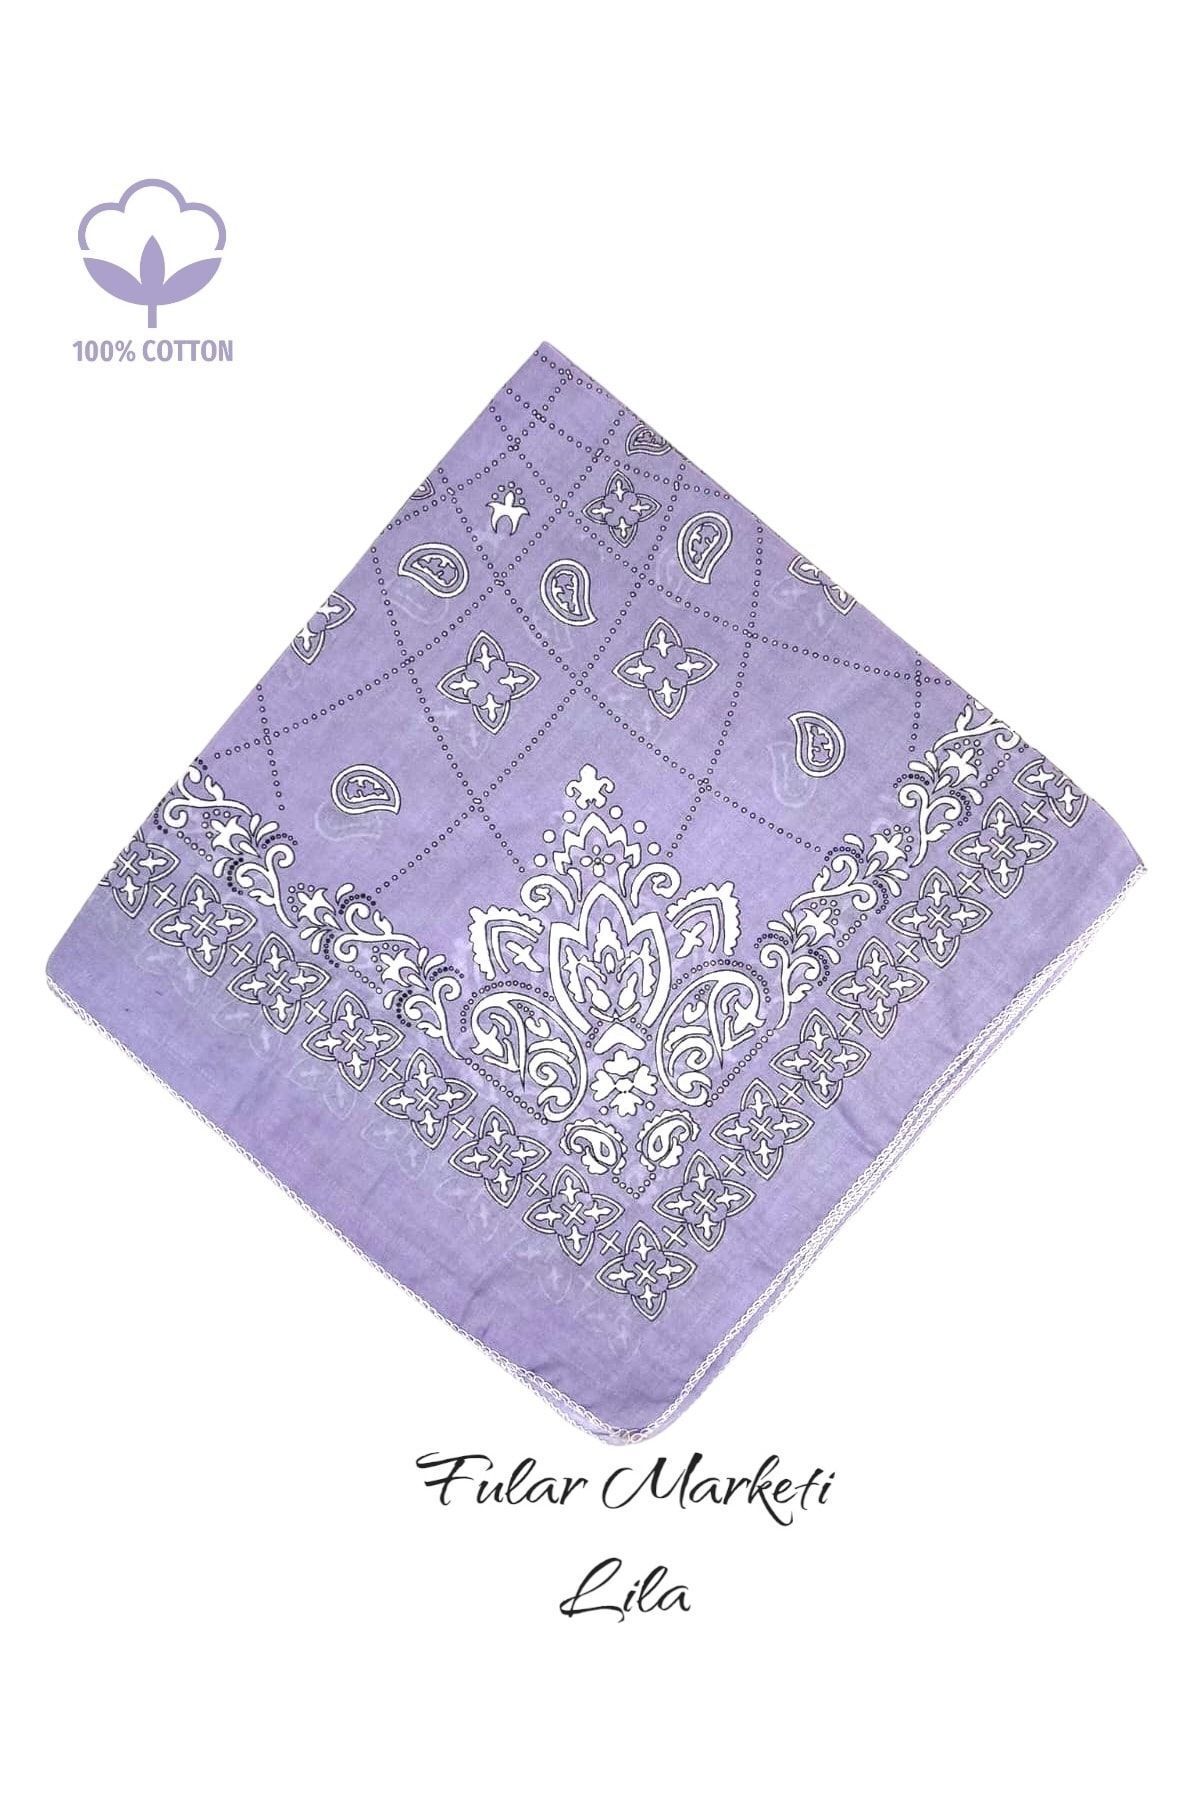 Fular Marketi %100 Pamuklu Elegance Desen Lila Sepete 5 Adet Ekle 4 Adet Öde Kampanyalı 1 Adet Fiyatıdır